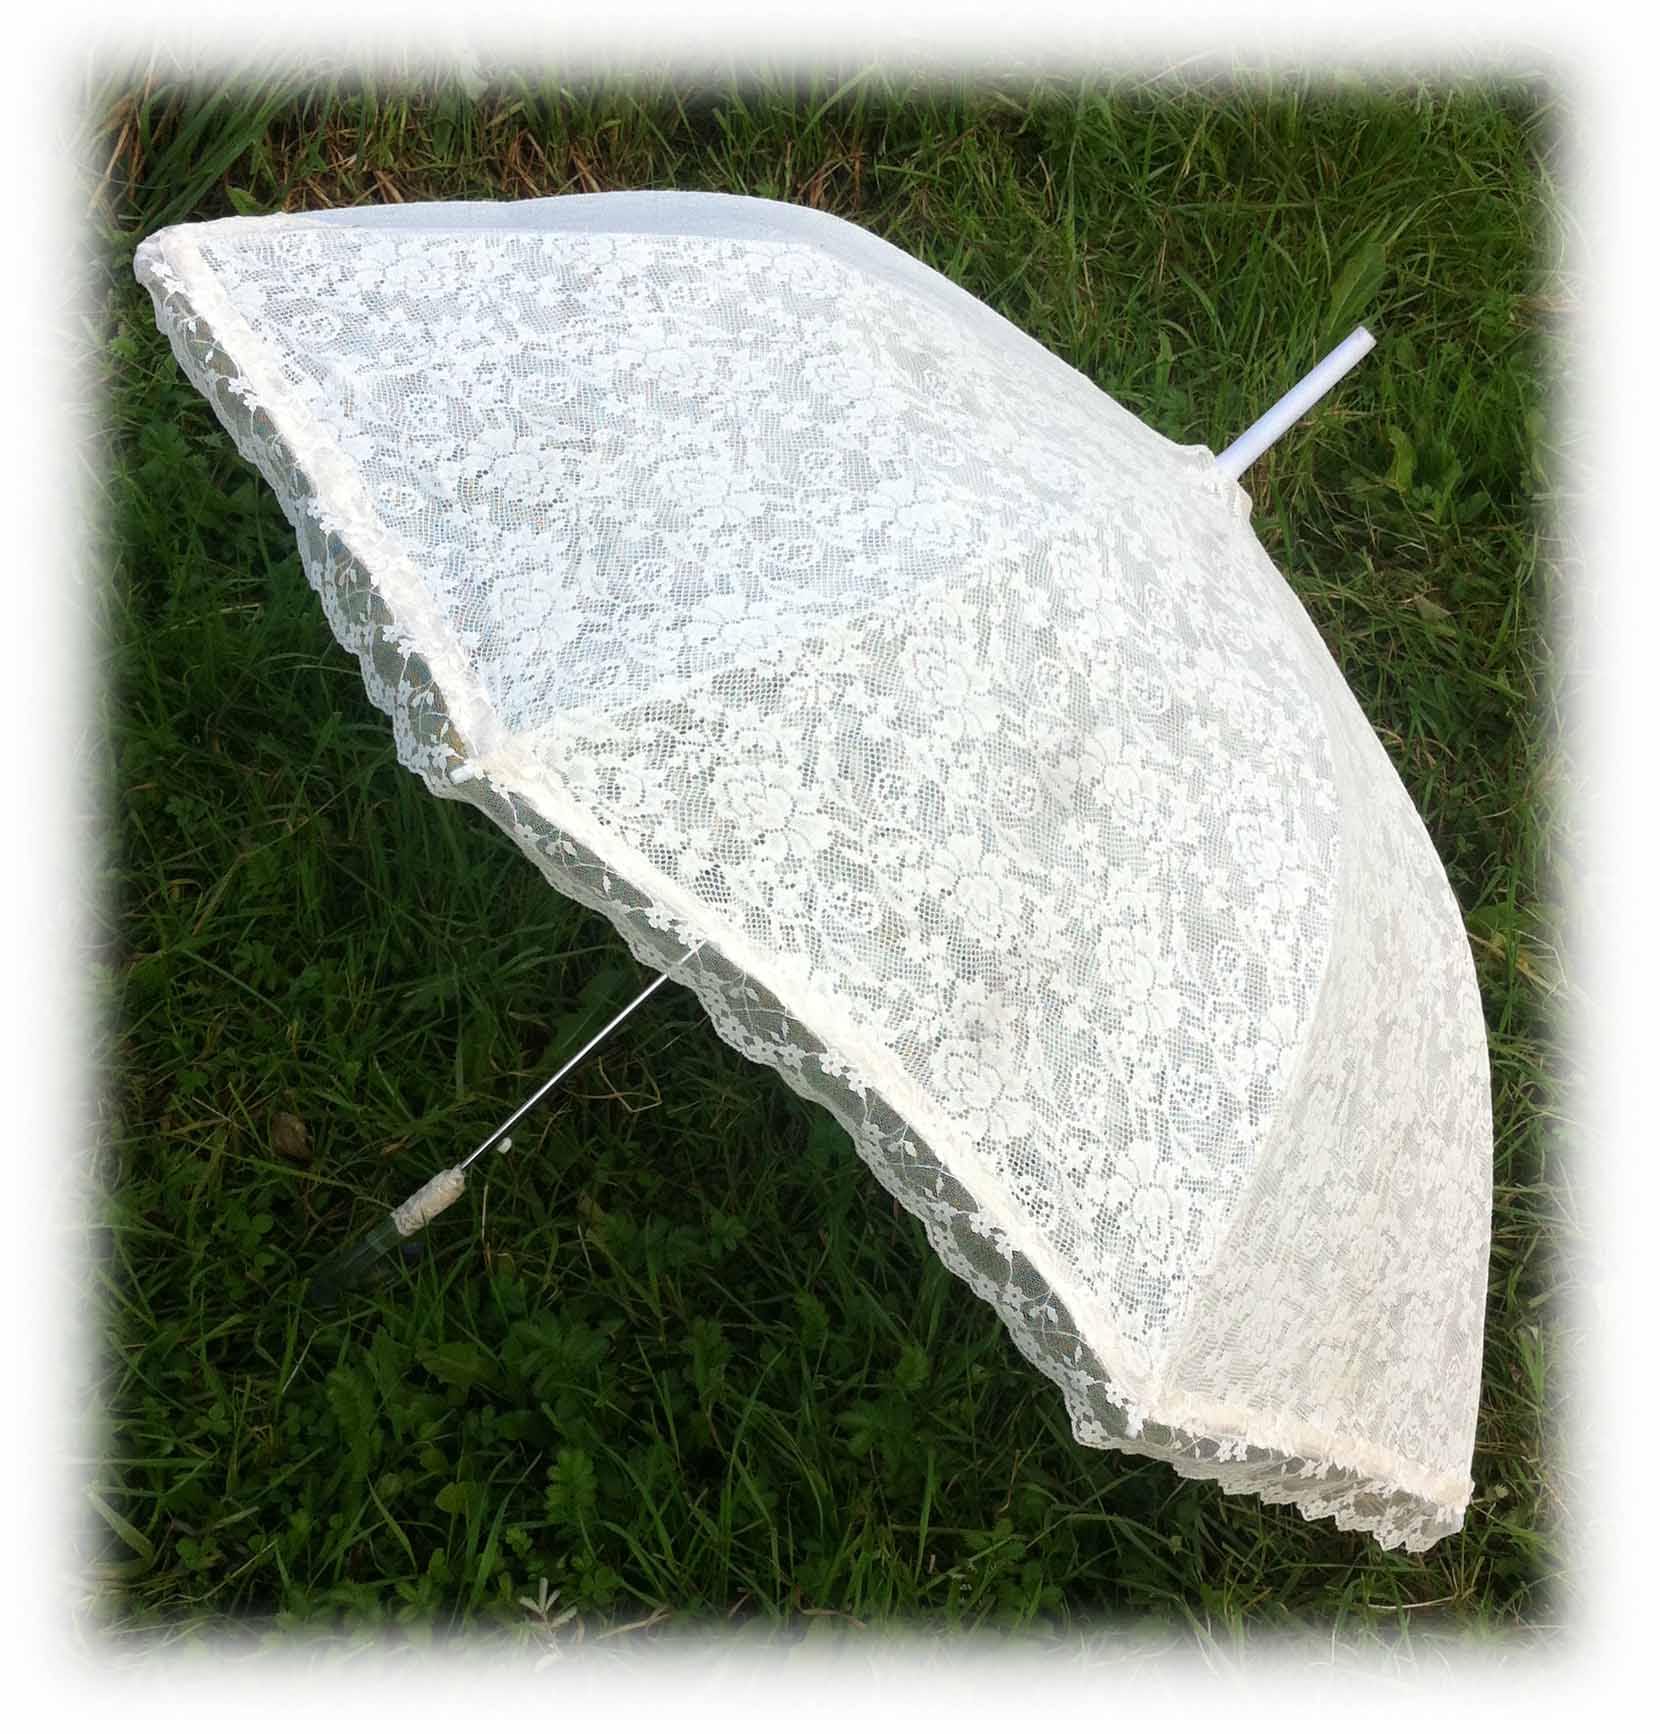 Молочный кружевной свадебный зонт, модель Селестина